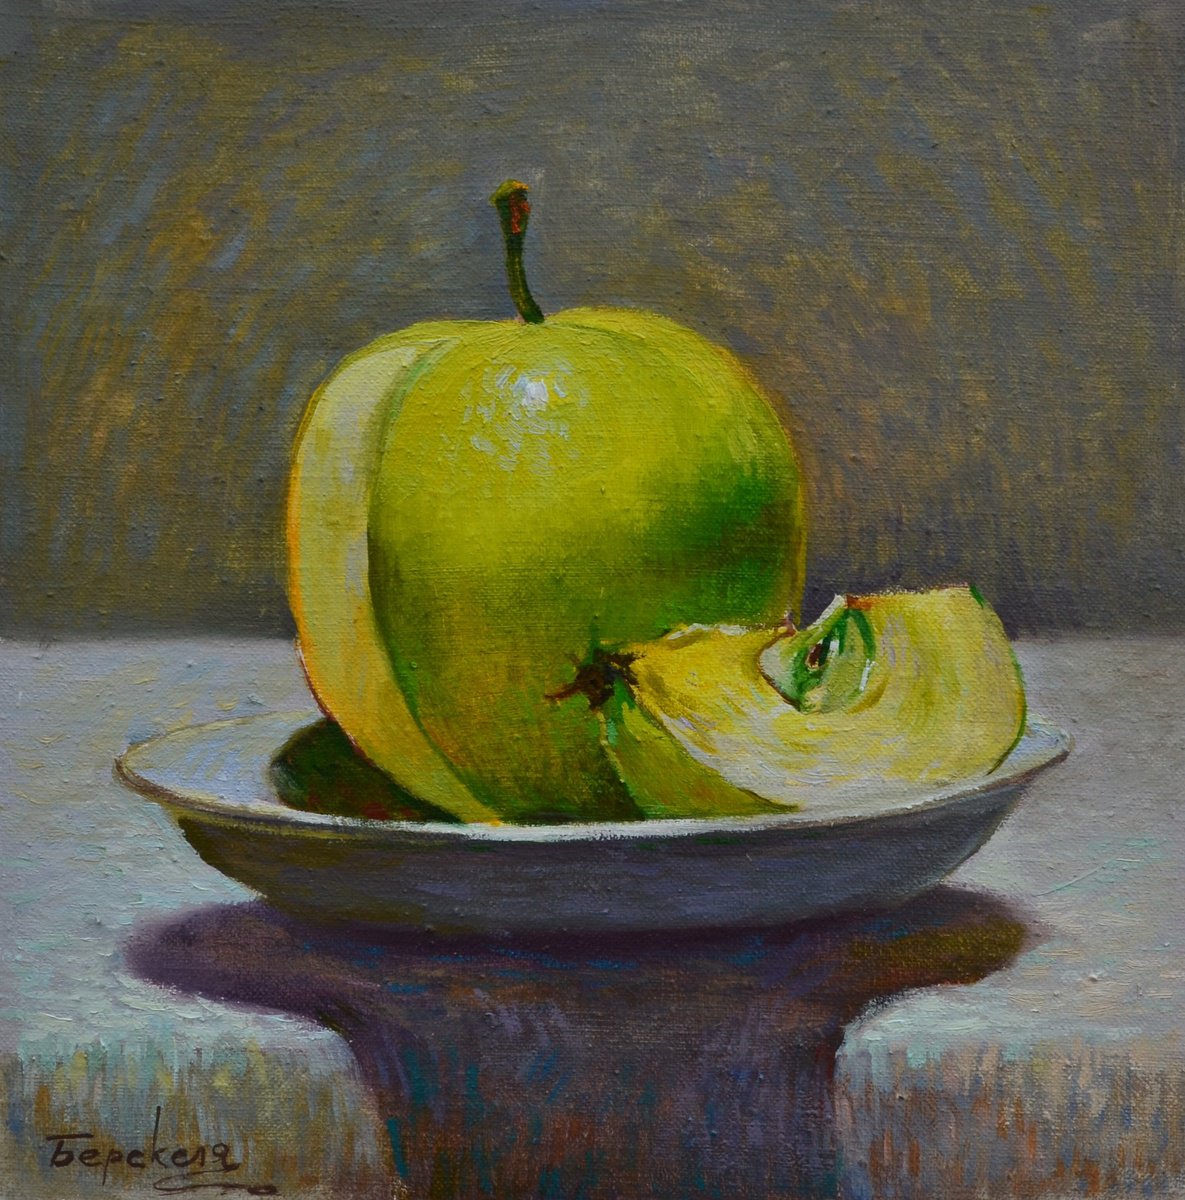 Green apple by Andriy Berekelia